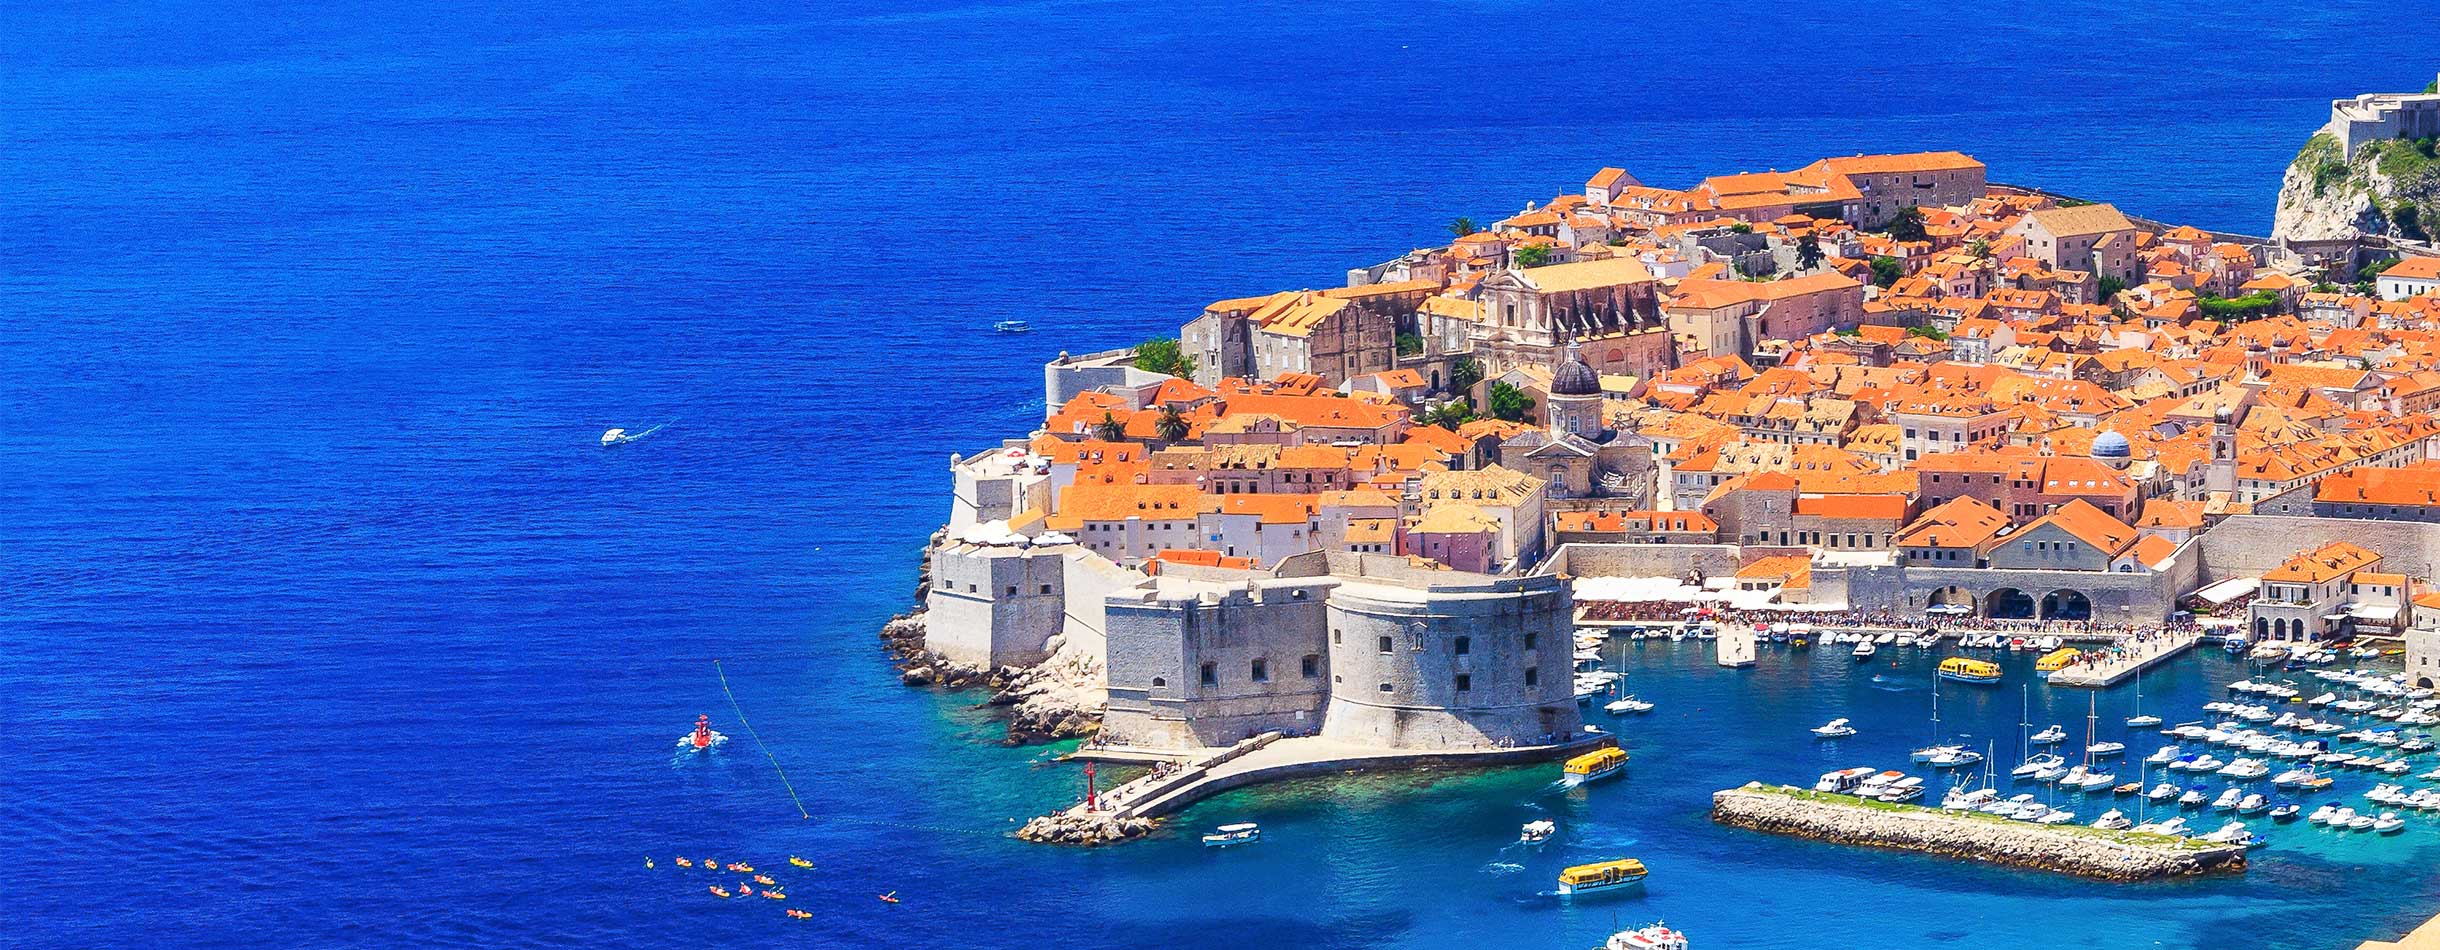 Croatia Dubrovnik Cd